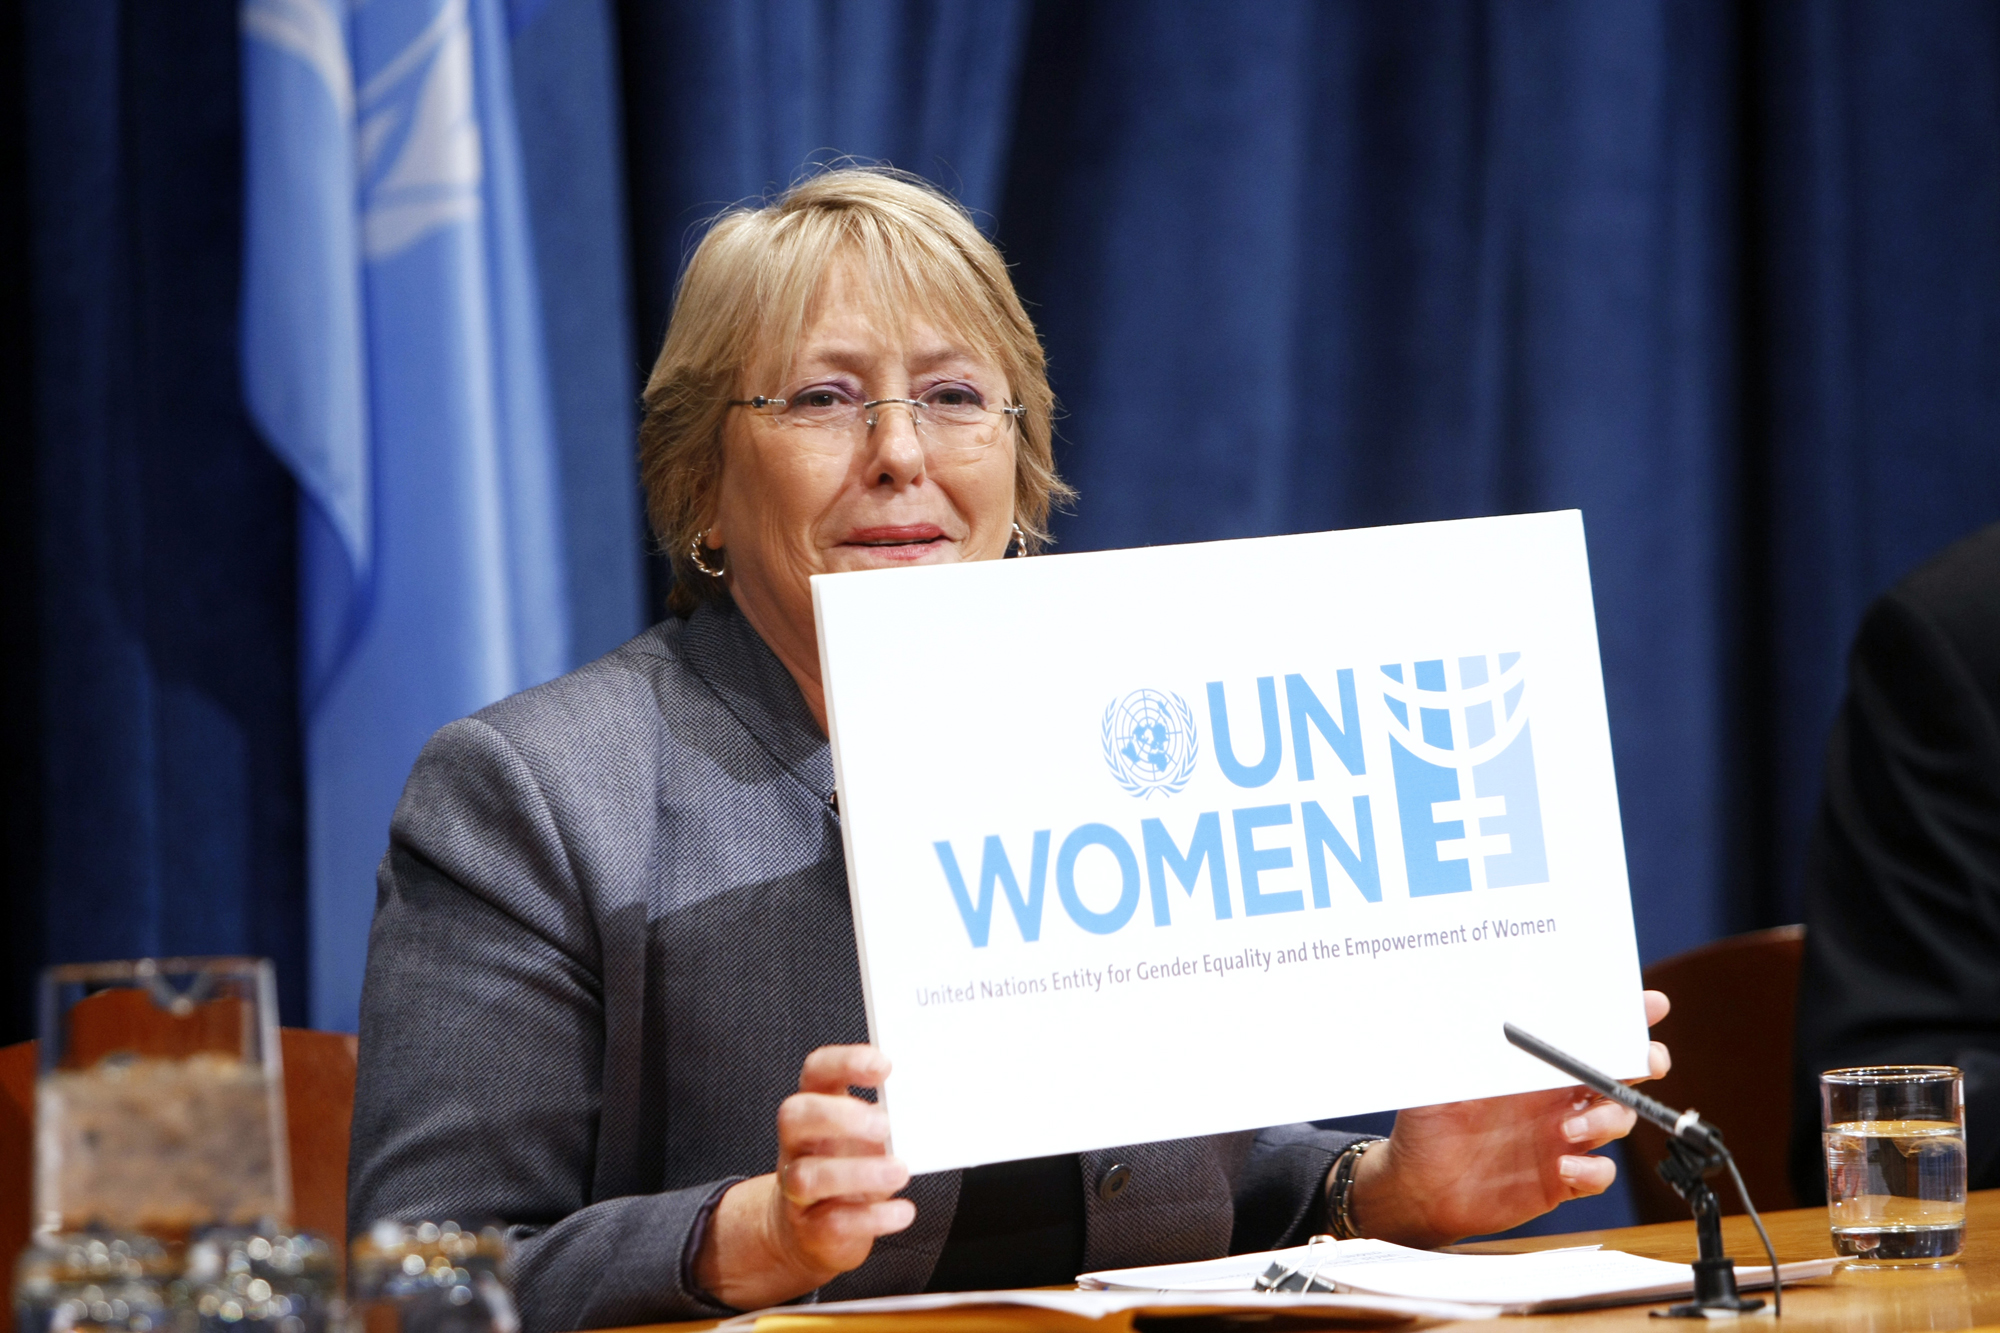 Законодательство оон. ООН. ООН женщины. Защита прав женщин в ООН. Un women — женщины ООН.